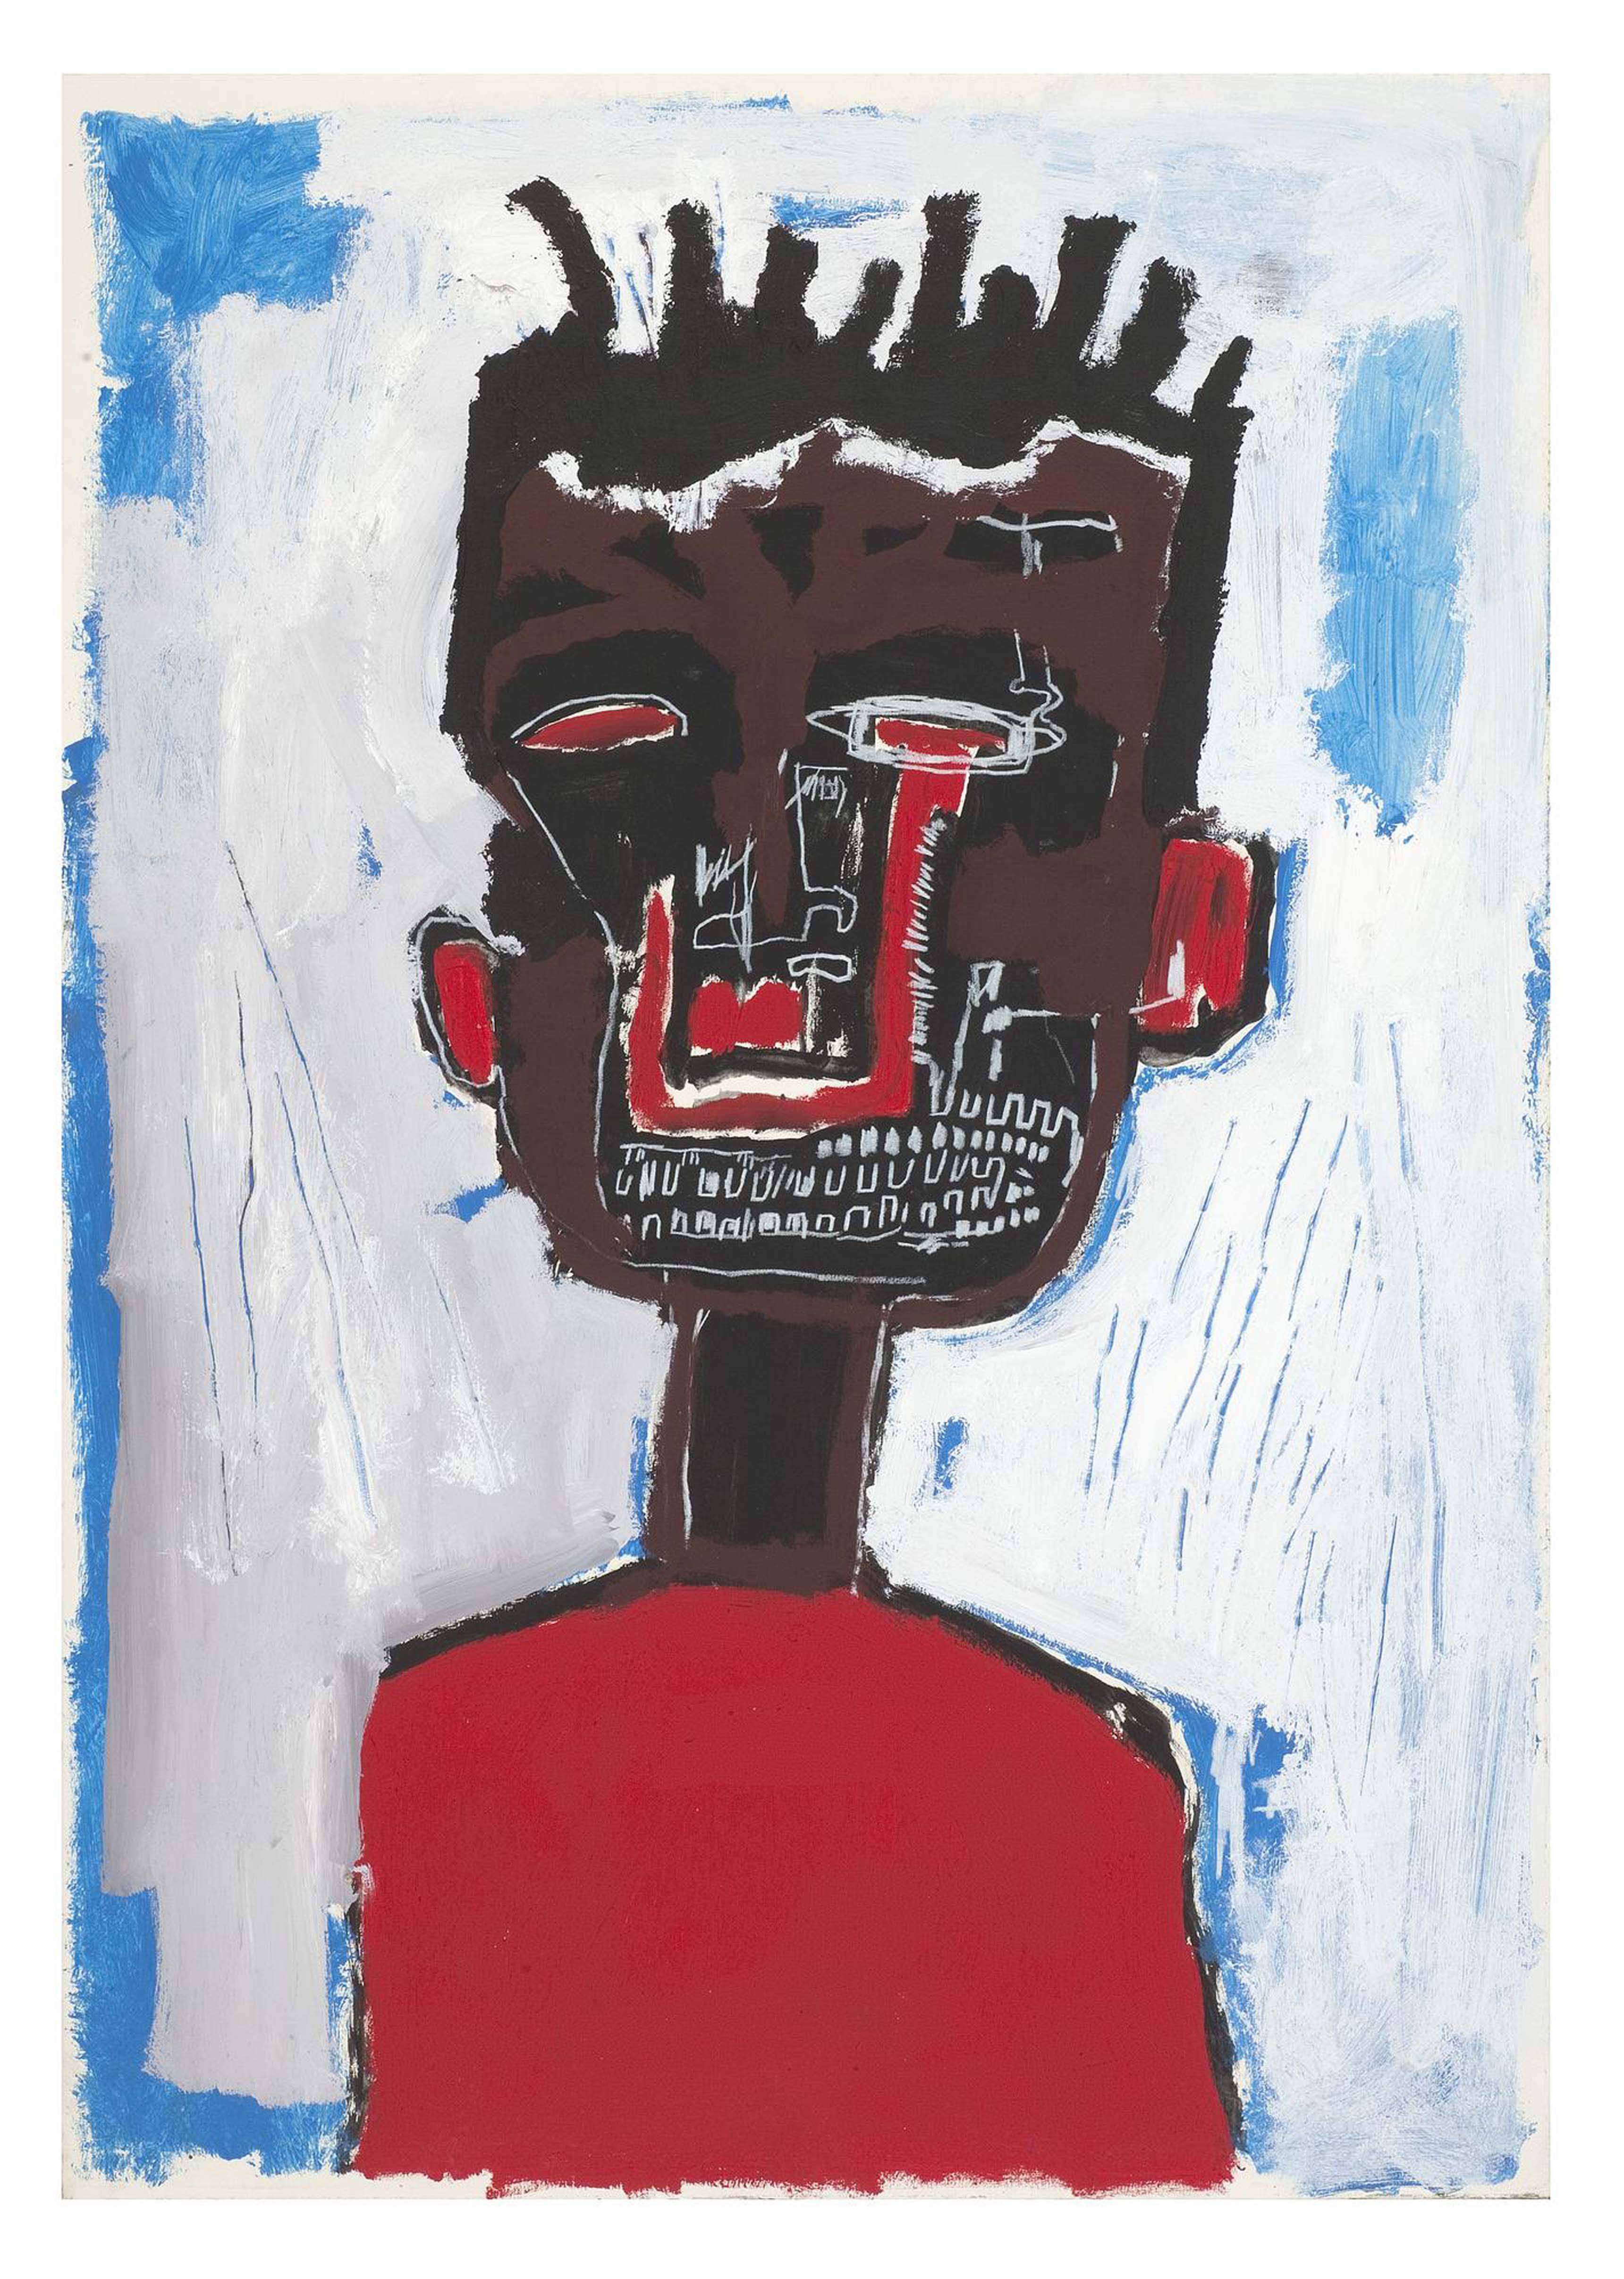 Jean-Michel Basquiat, Self Portrait, 1984, Private collection.